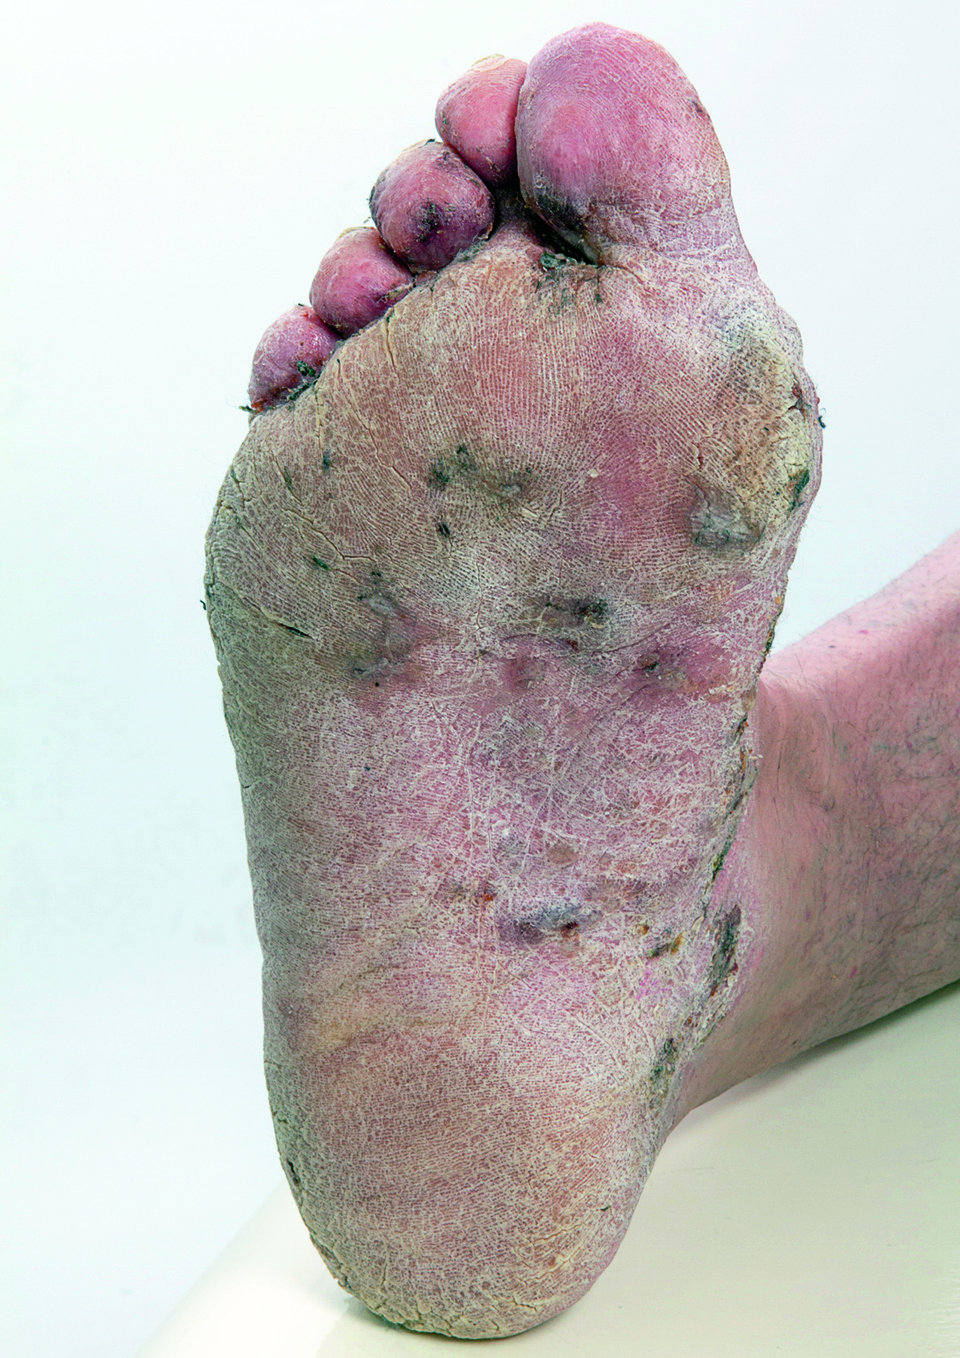 Bakterieller Fußinfekt mit gelb-bräunlichen, schmierigen Belägen in den Zehenzwischenräumen und plantarer Hyperkeratose mit Rhagaden.